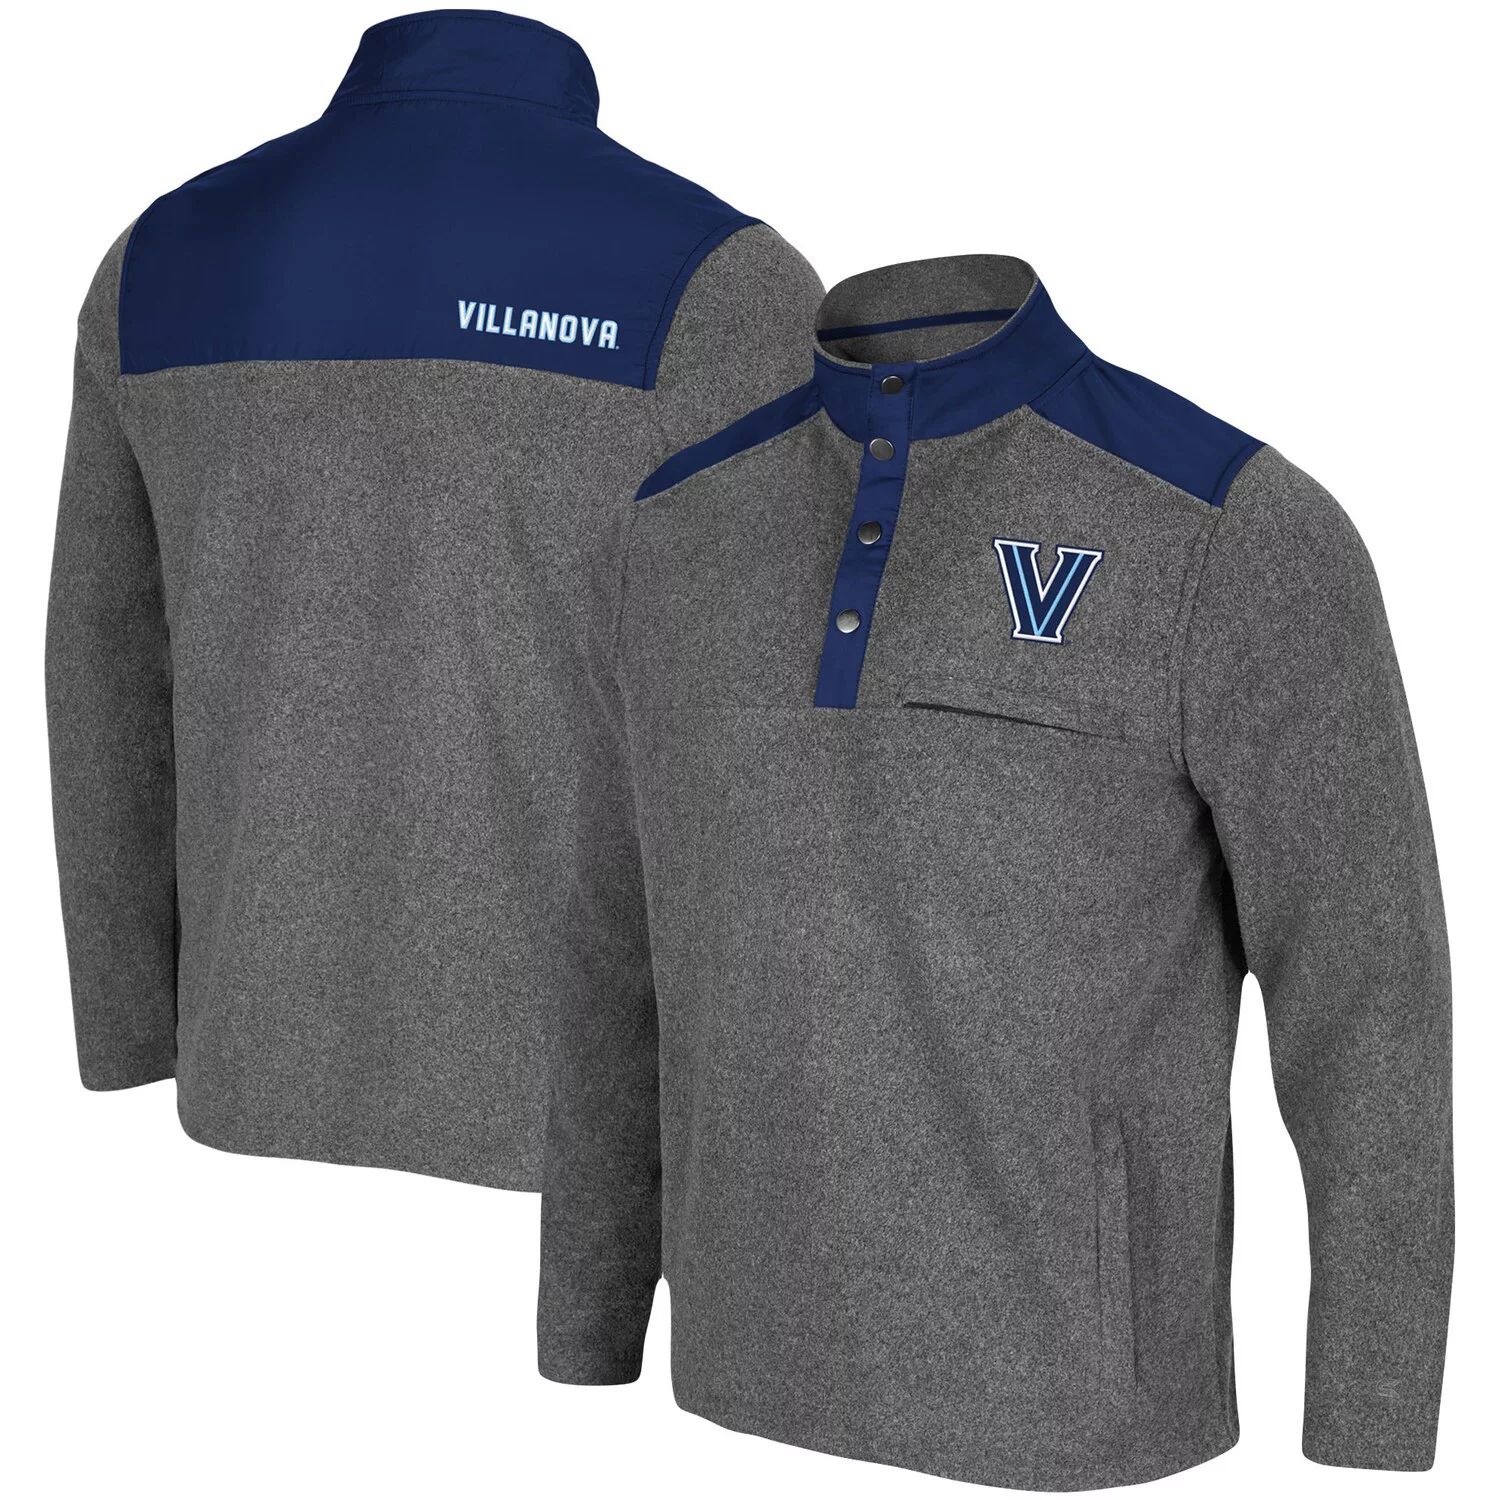 Мужской пуловер с принтом древесного угля/темно-синего цвета Villanova Wildcats Huff Snap Snap Colosseum